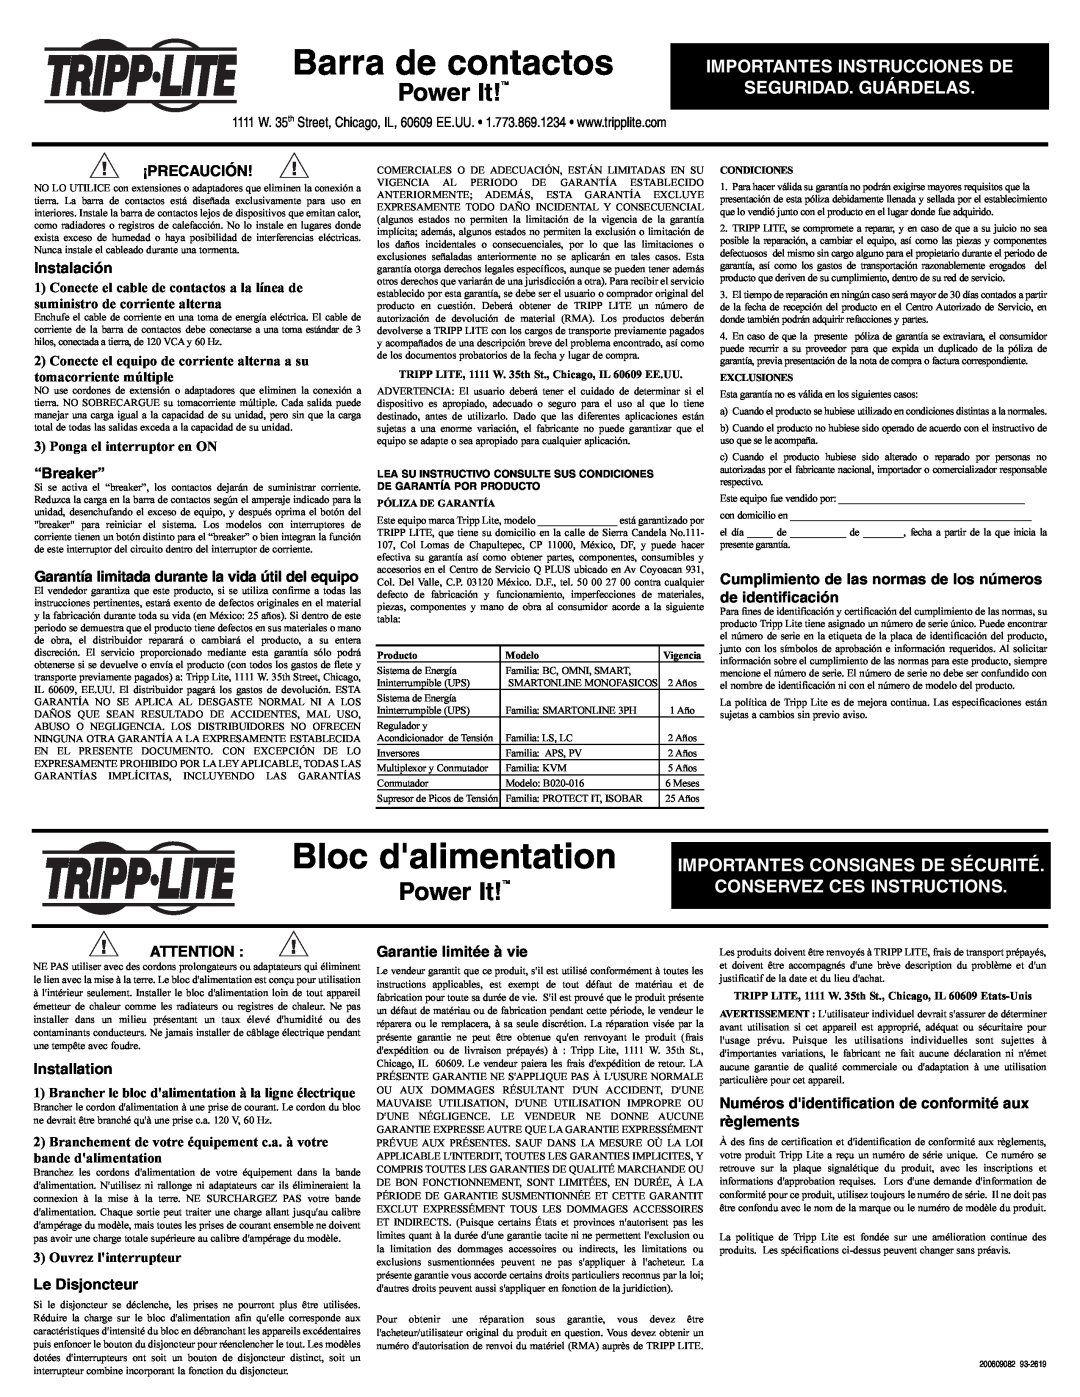 Tripp Lite 200609062 Barra de contactos, Bloc dalimentation, Power It!TM, Importantes Instrucciones De, ¡Precaución 